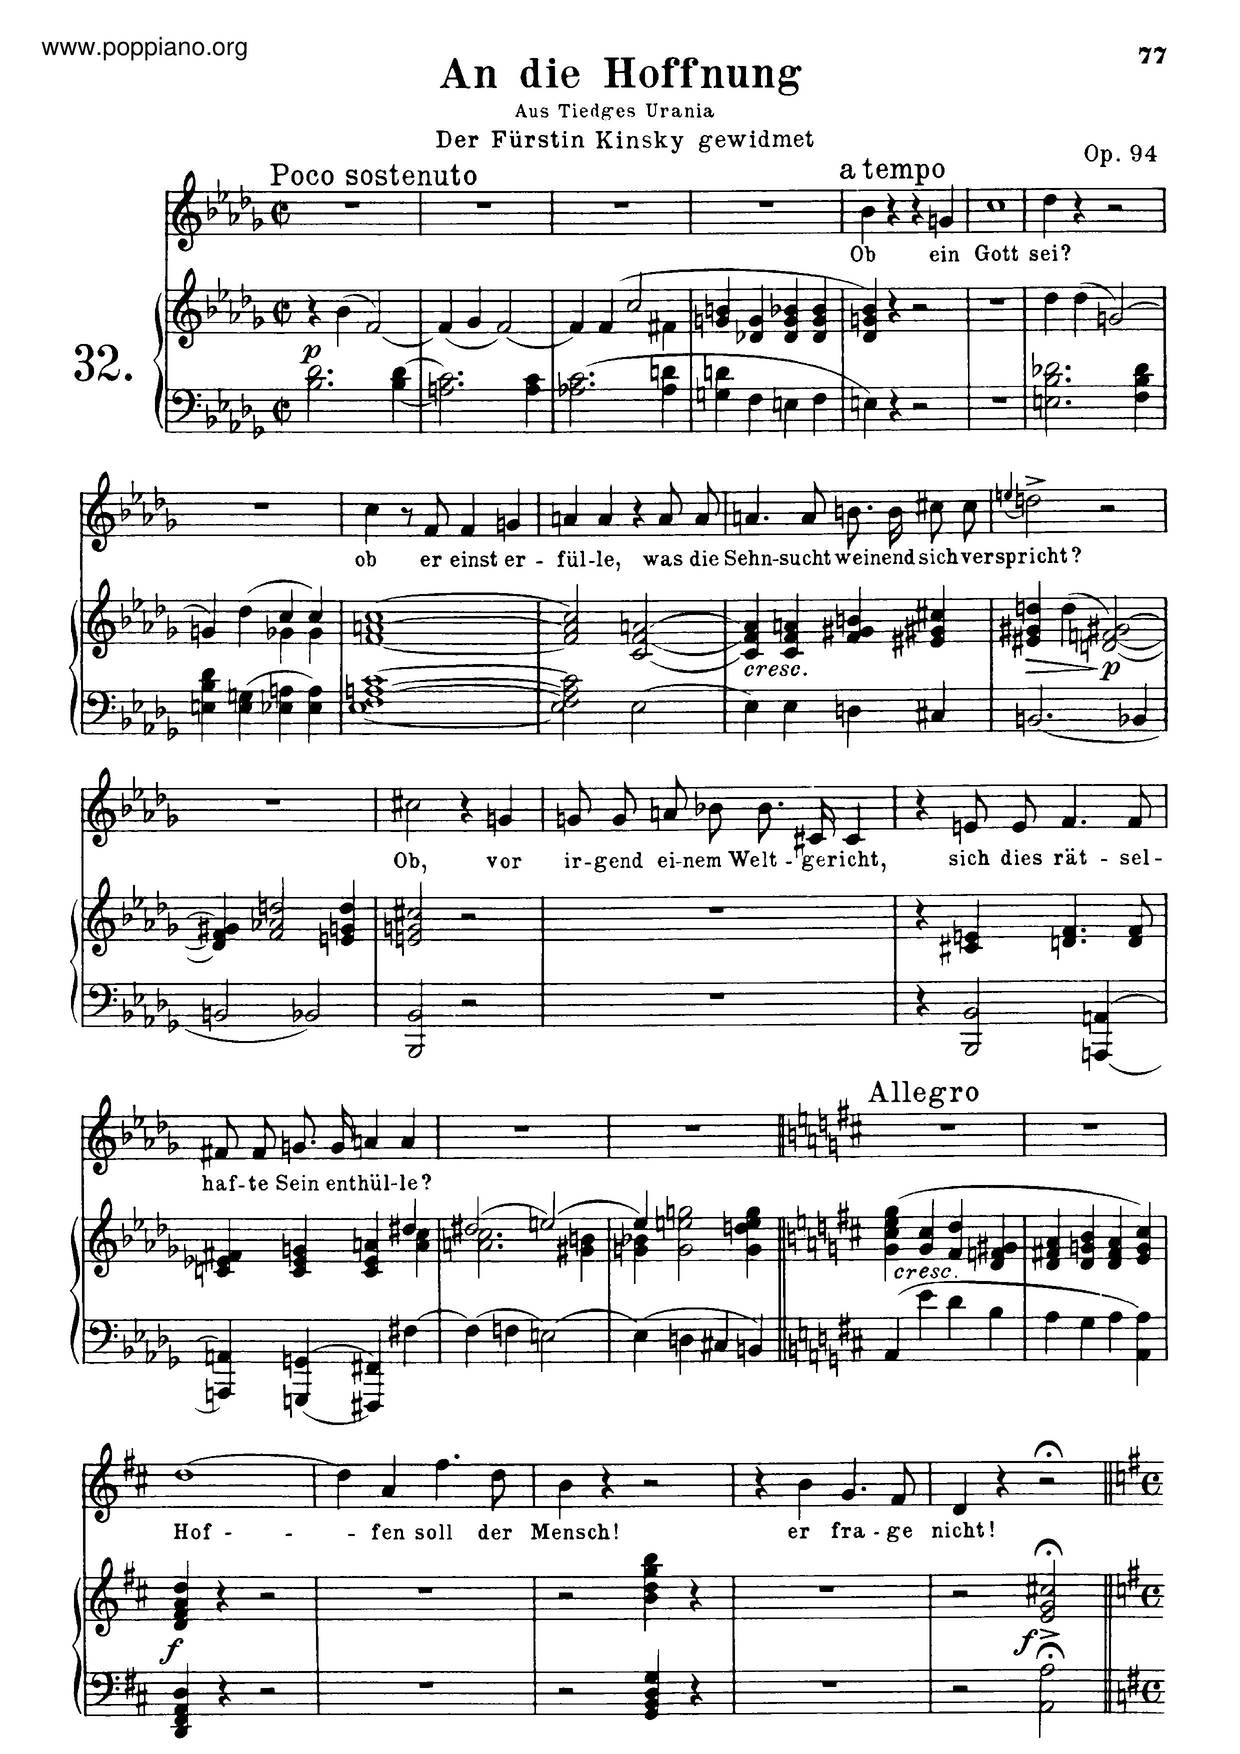 An Die Hoffnung, Op. 94ピアノ譜